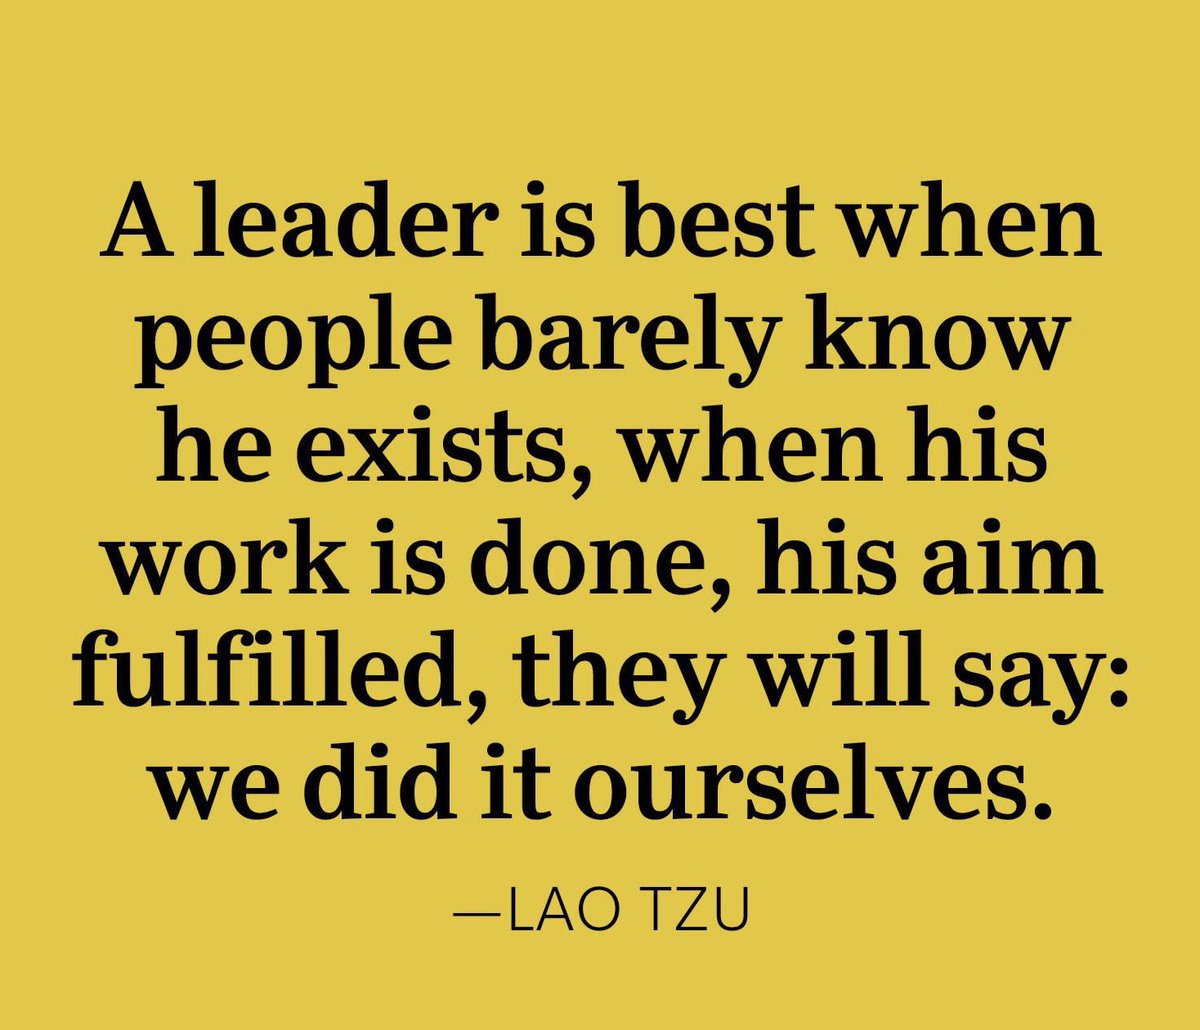 #LeadershipMatters